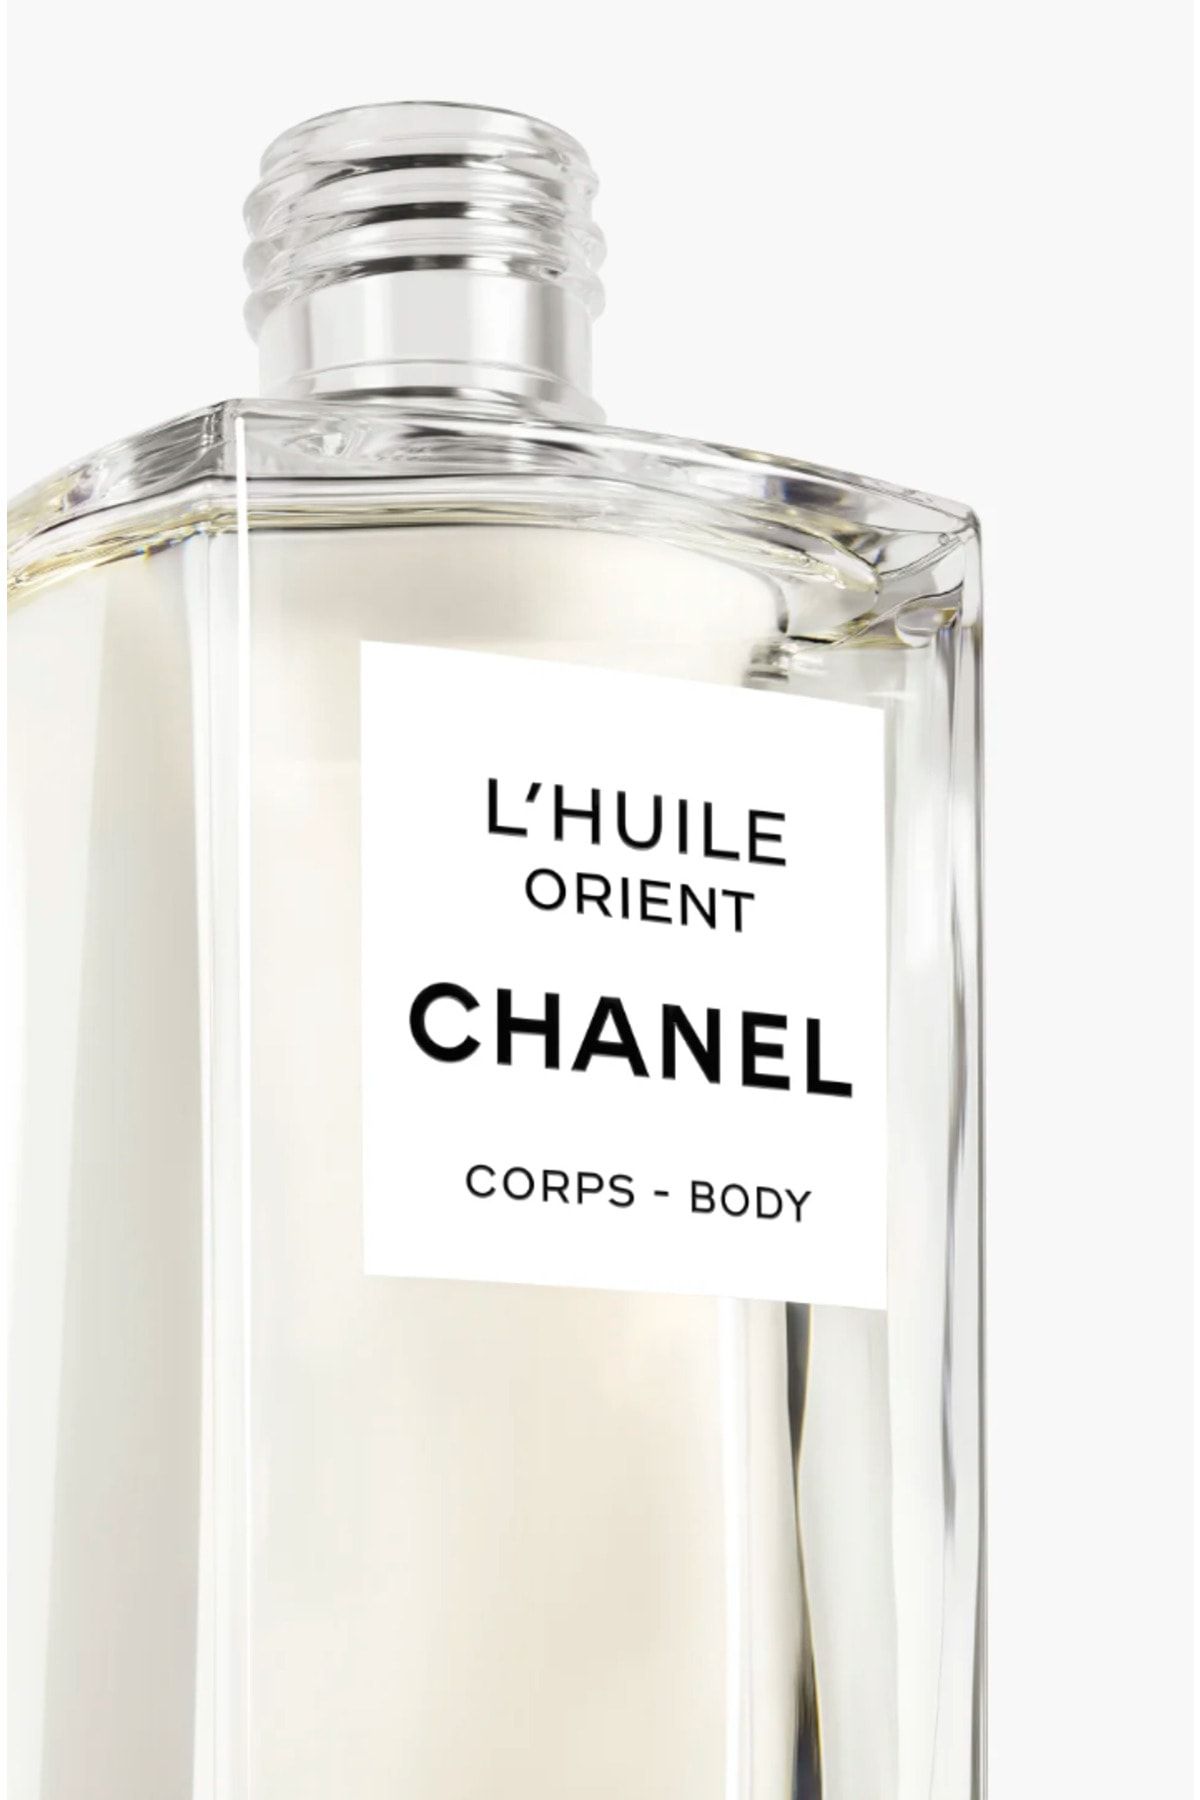 Chanel روغن ماساژ بدن L'Huile Orient مرطوب کننده و نرم کننده پوست 250میل